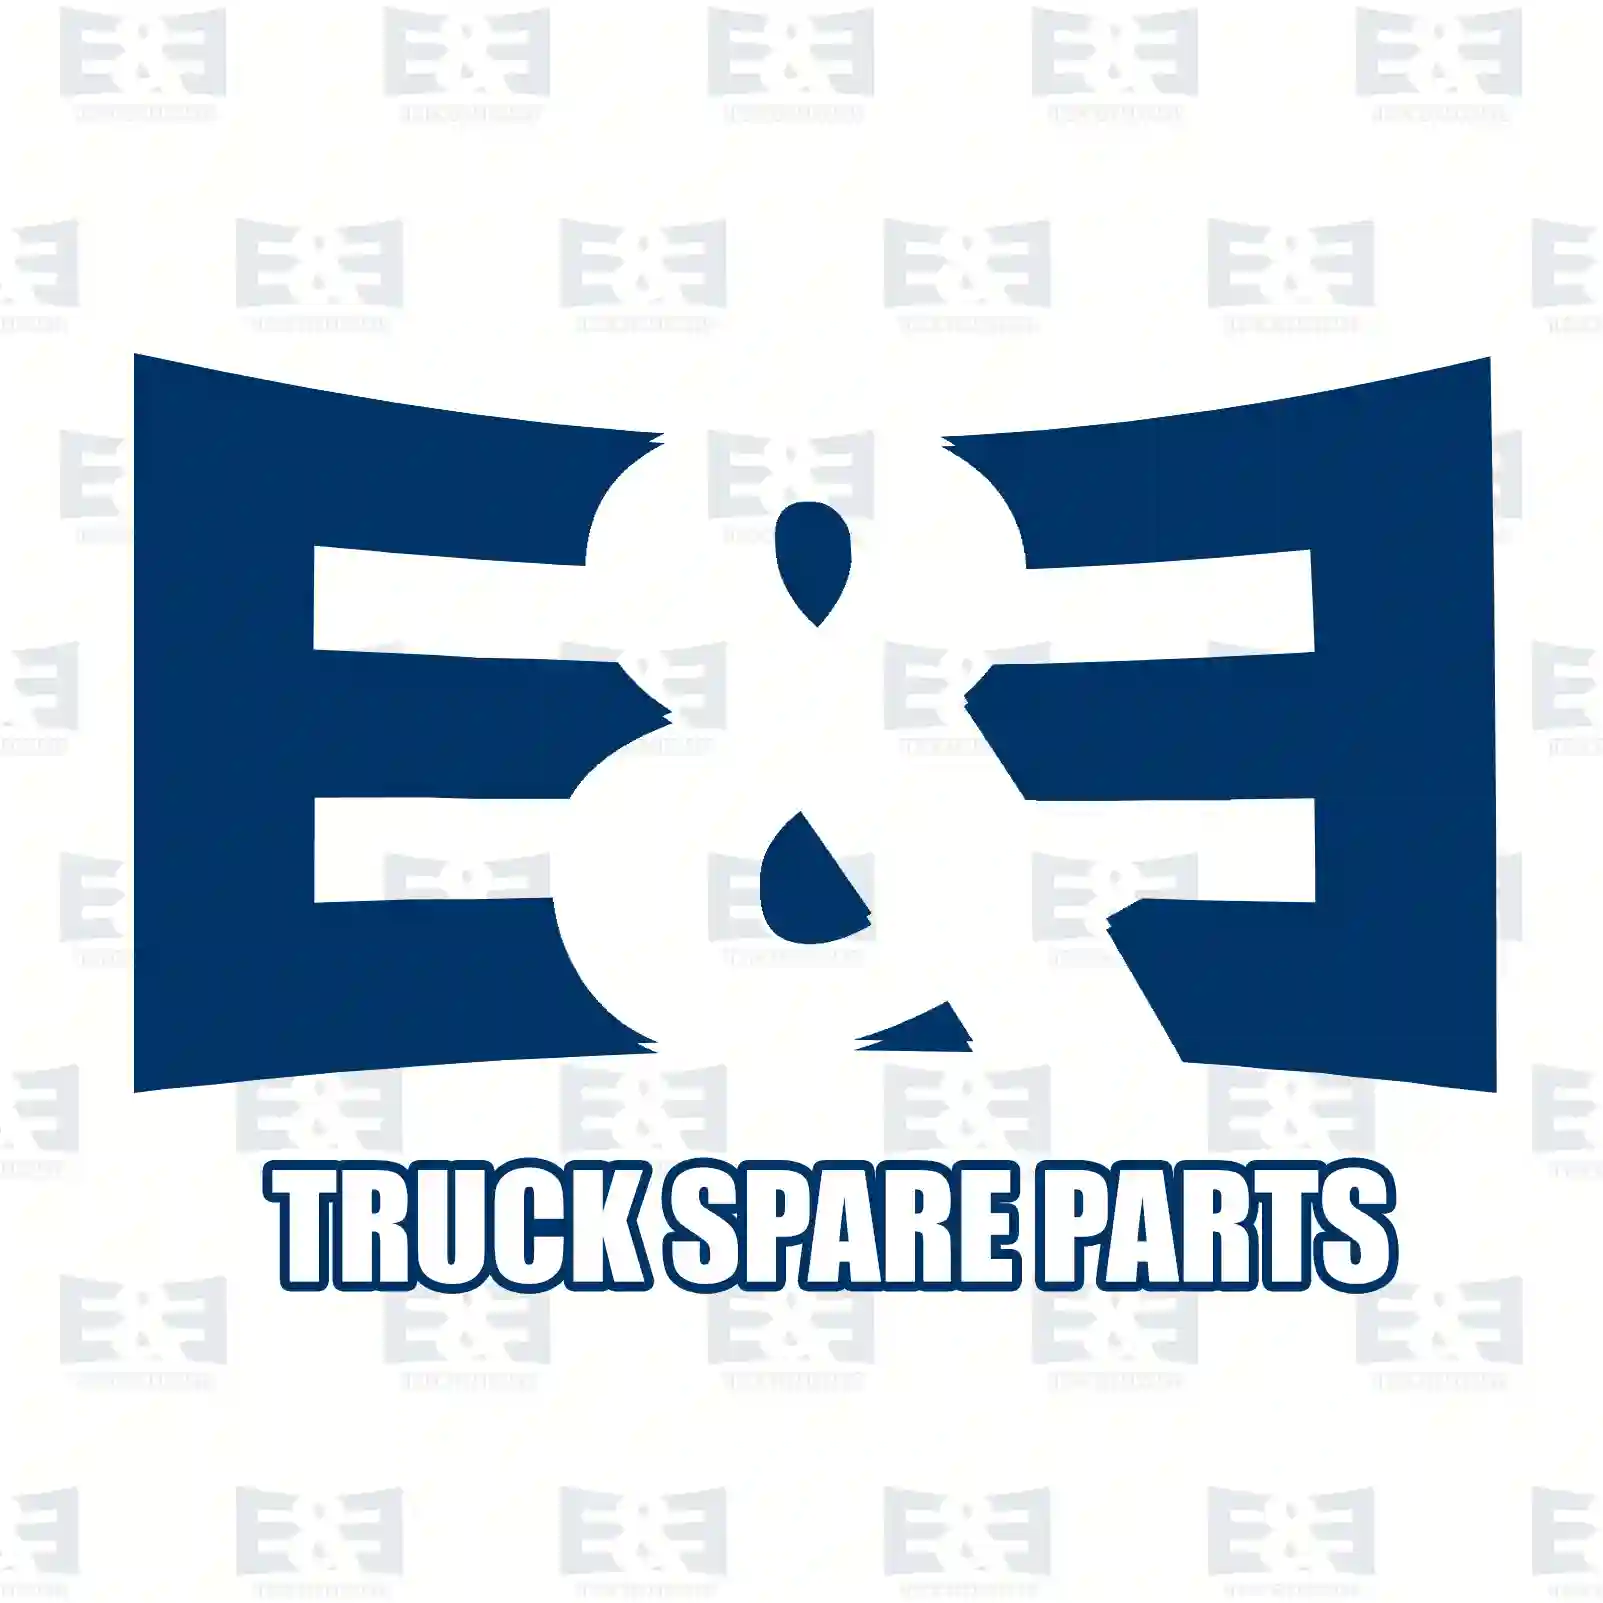 Brake caliper, right, reman. / without old core, 2E2295076, 0014205701, 0014205901, 0024202101, 0024202401, 0024203201, 0024203701, 9754201901, 9754202101, 9754202301, 9754202501, MXC9102015 ||  2E2295076 E&E Truck Spare Parts | Truck Spare Parts, Auotomotive Spare Parts Brake caliper, right, reman. / without old core, 2E2295076, 0014205701, 0014205901, 0024202101, 0024202401, 0024203201, 0024203701, 9754201901, 9754202101, 9754202301, 9754202501, MXC9102015 ||  2E2295076 E&E Truck Spare Parts | Truck Spare Parts, Auotomotive Spare Parts